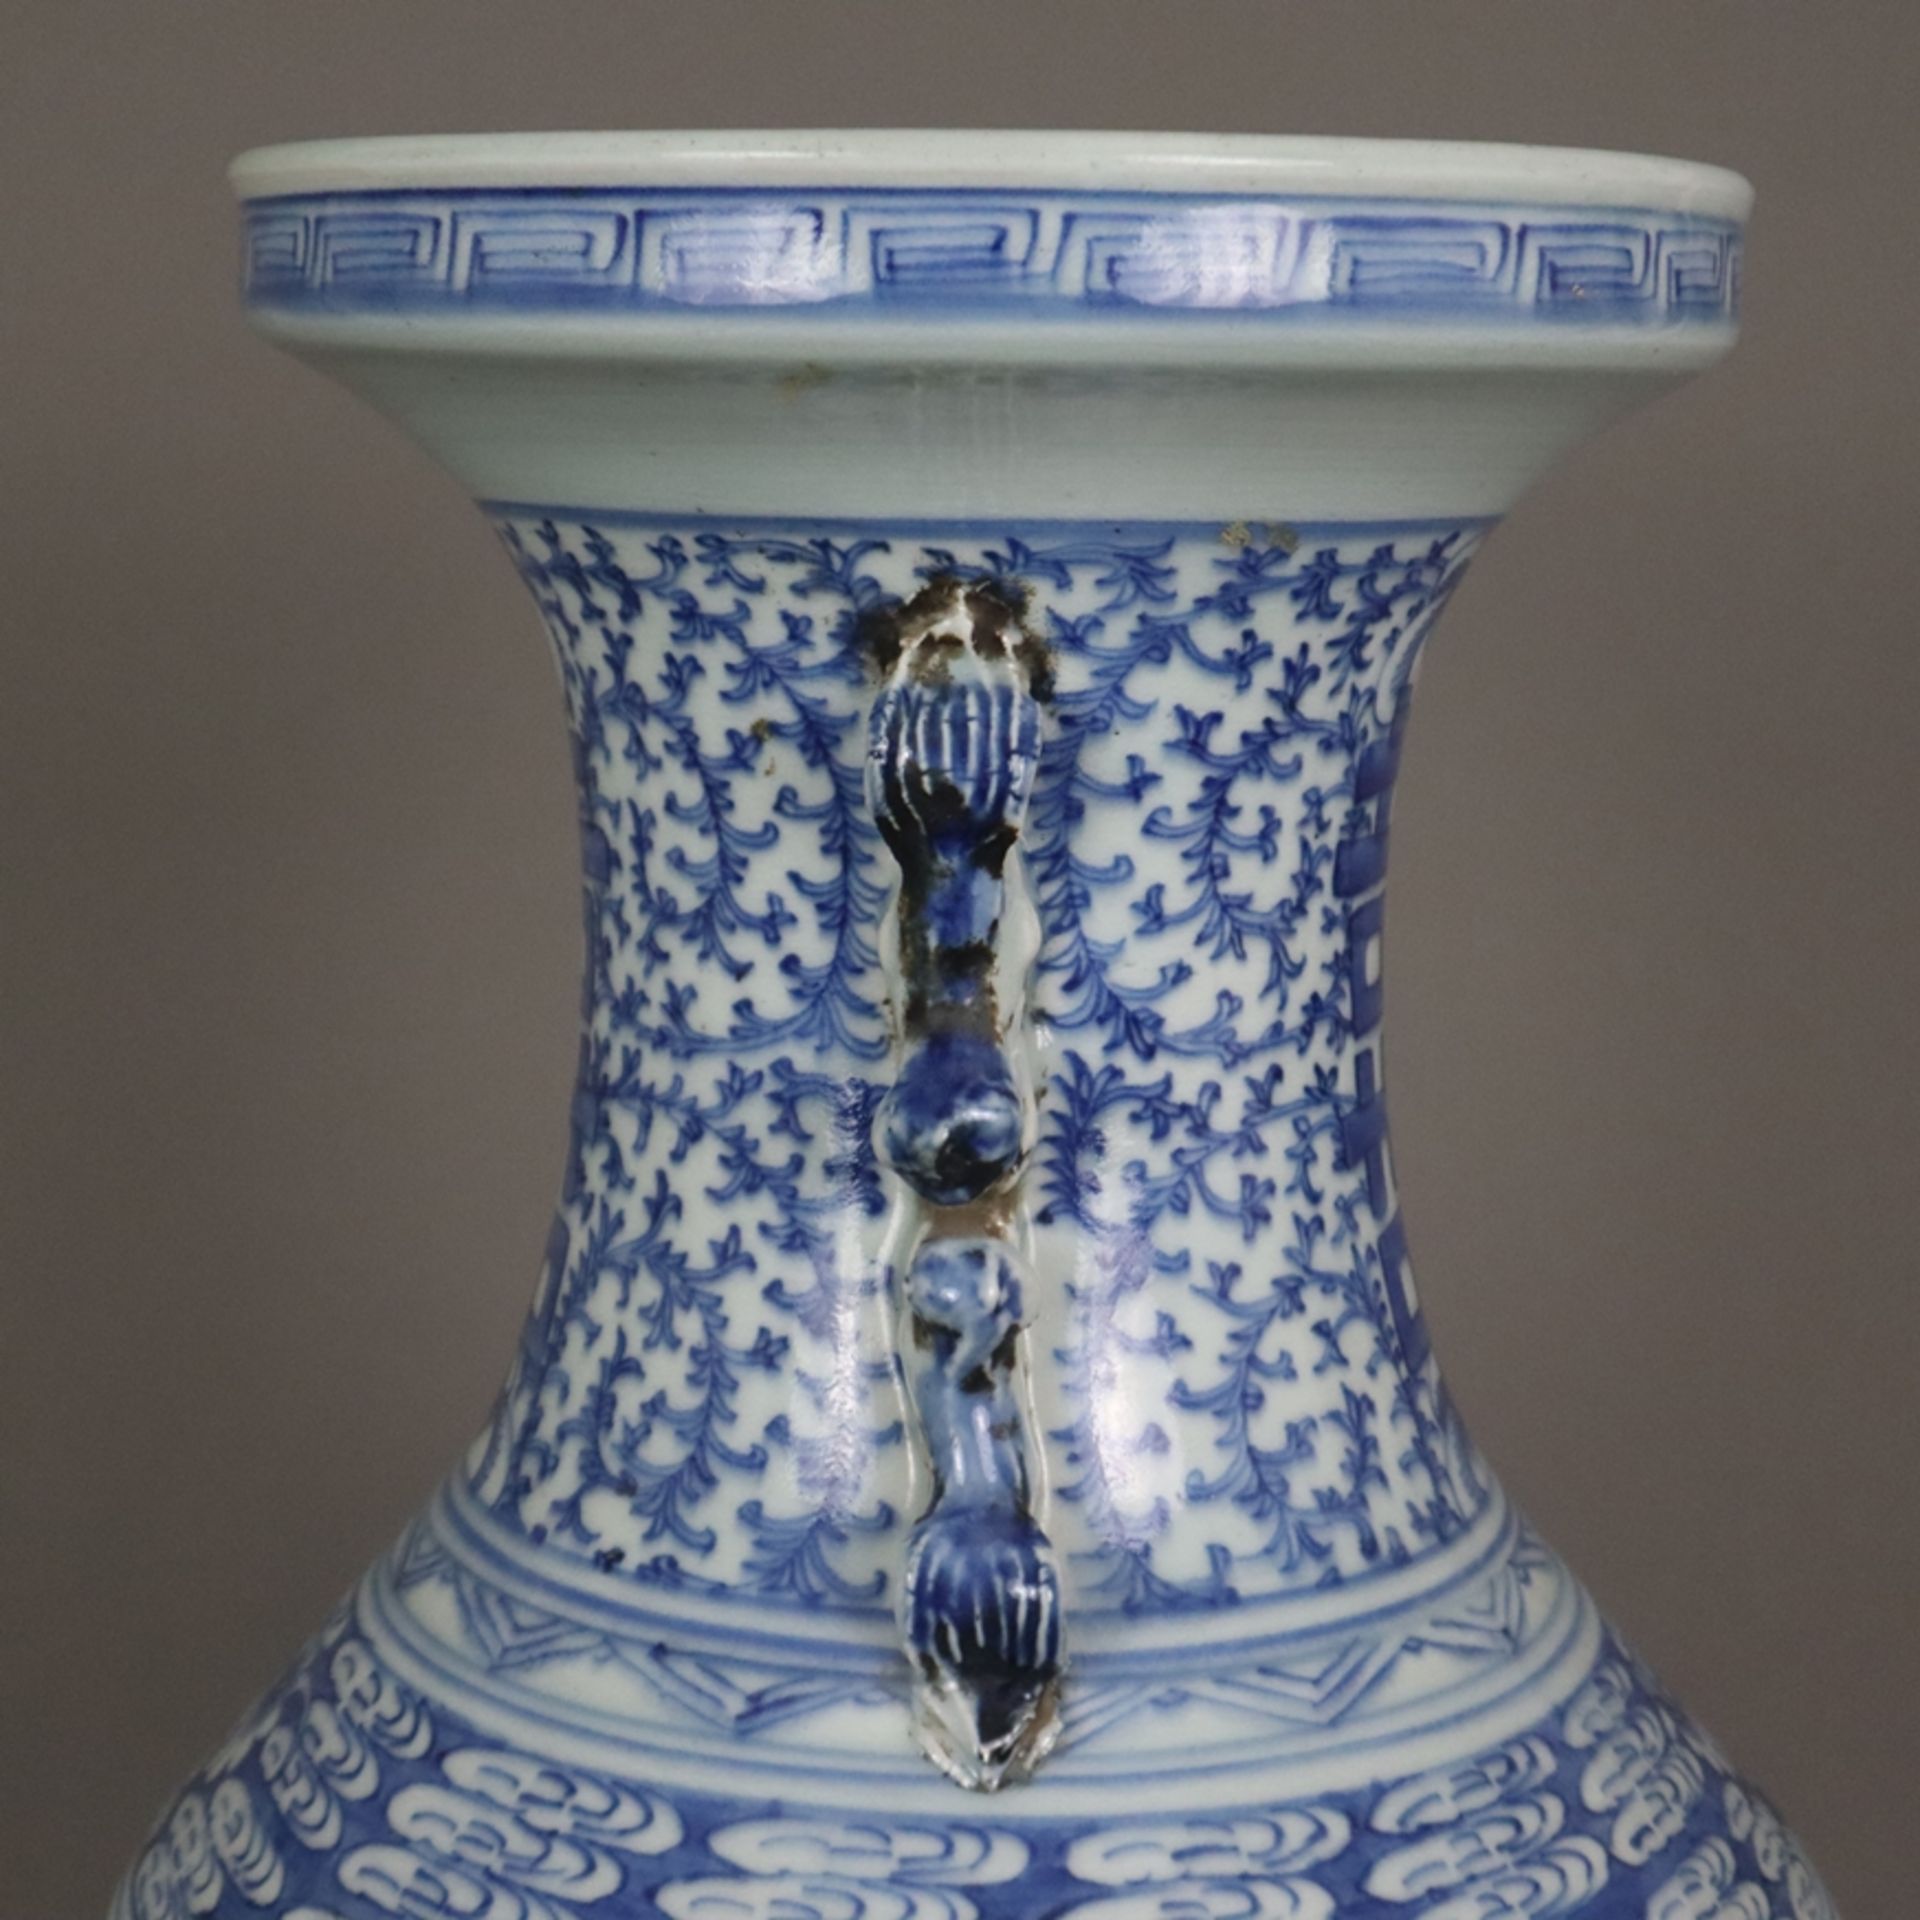 Blau-weiße Bodenvase - China, späte Qing-Dynastie, Tongzhi 1862-1875, sog. „Hochzeitsvase“, auf der - Bild 9 aus 14